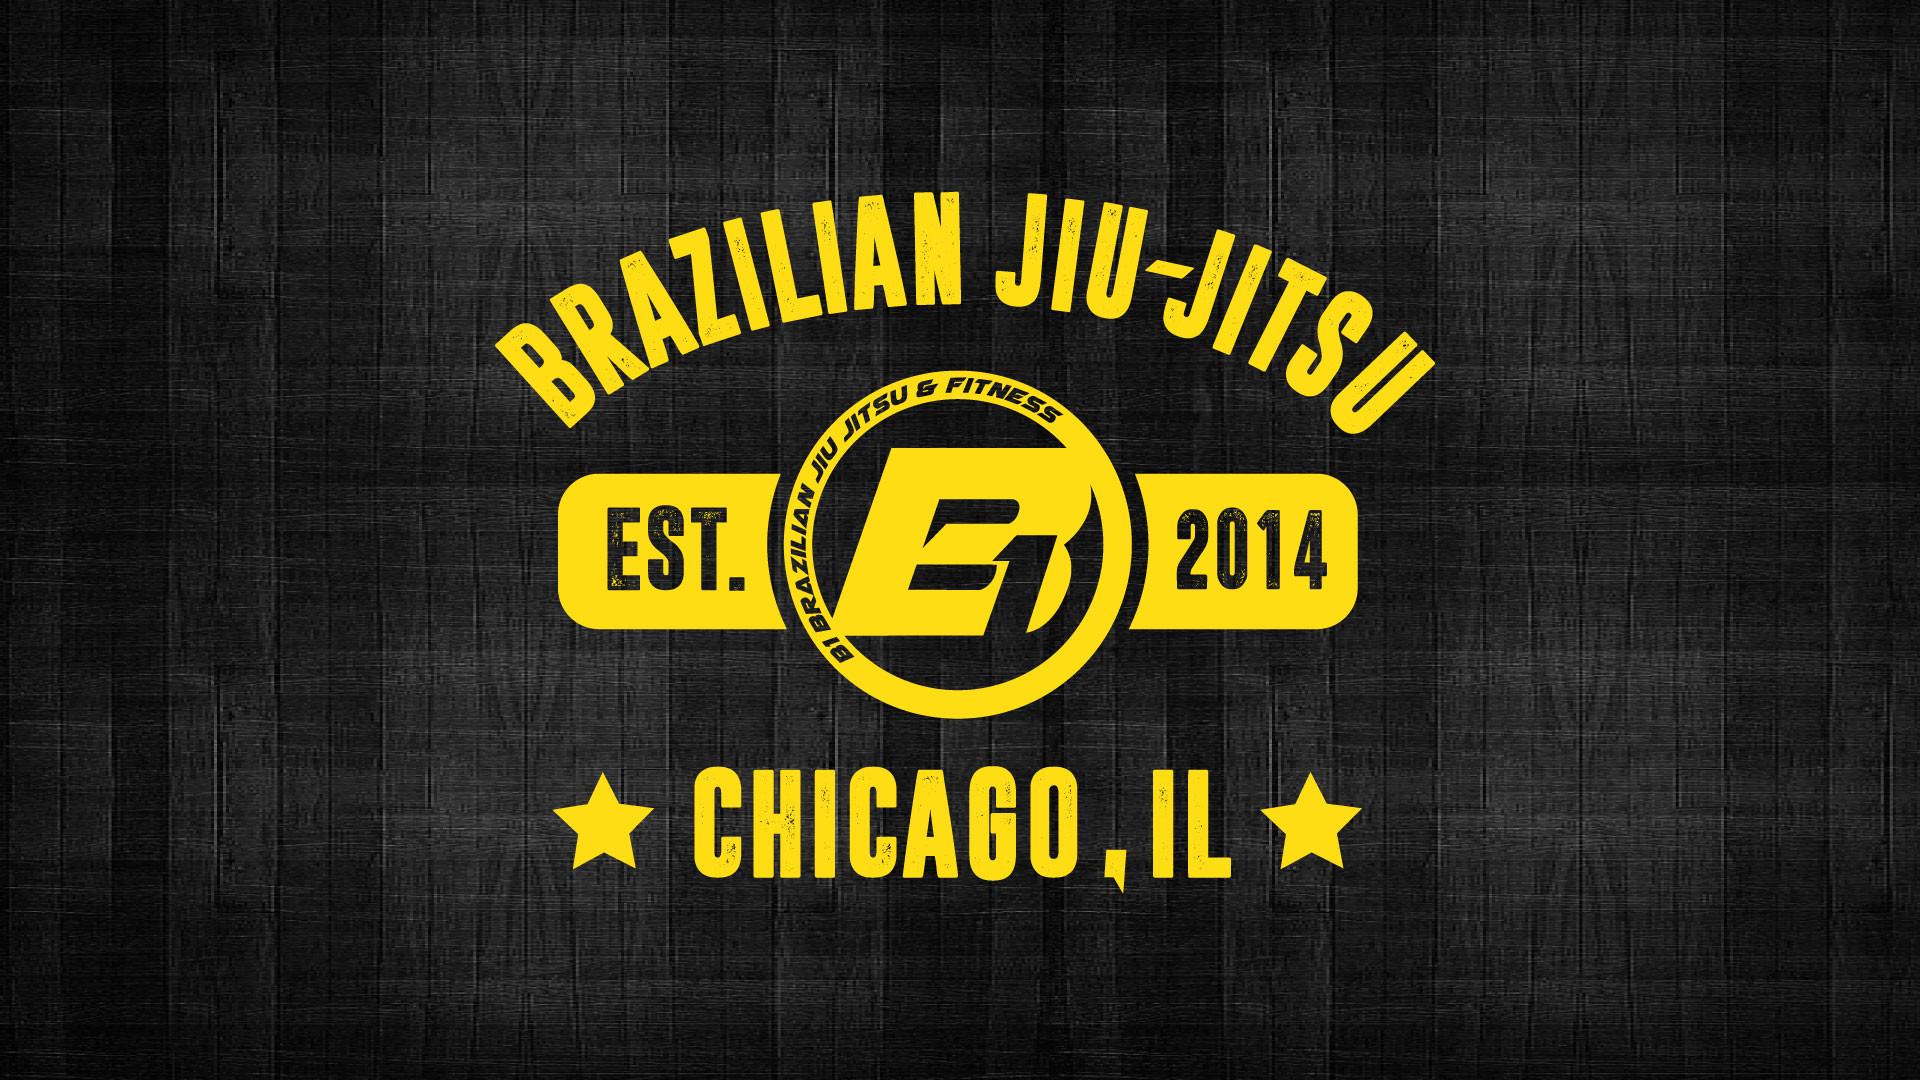 1920x1080 B1 UNIVERSITY WALLPAPER. Brazilian Jiu-Jitsu ...